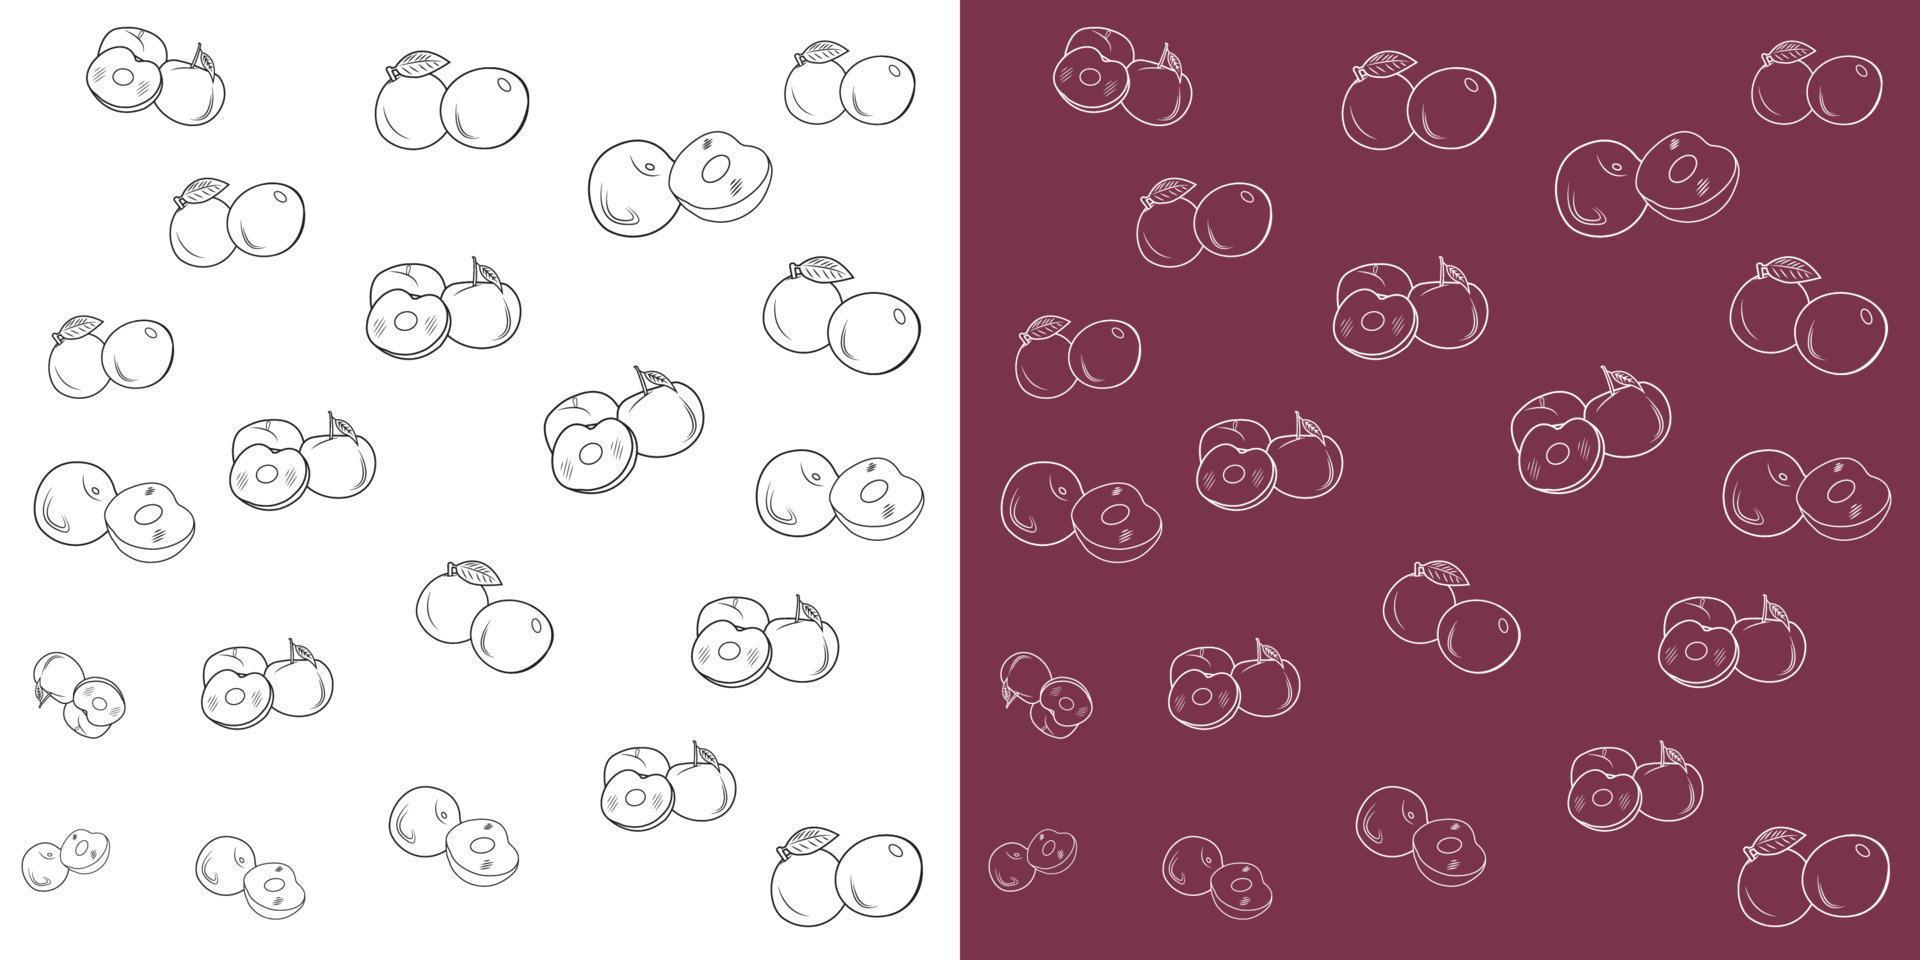 grupo de padrão de rabiscos de frutas de ameixa meia ameixa e uma fatia, isolado em um fundo branco e roxo vetor